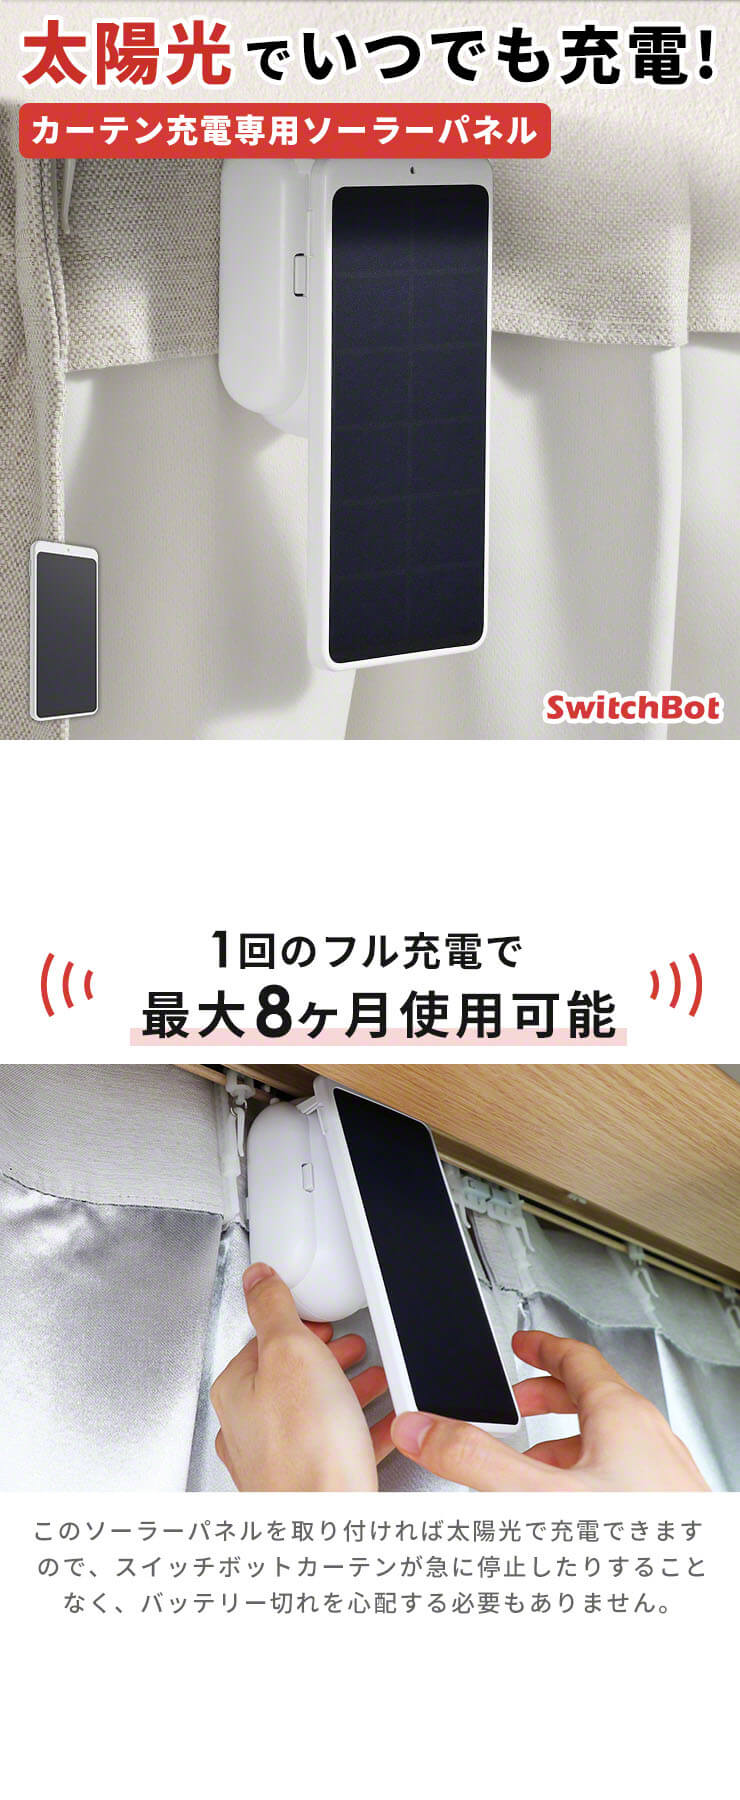 SwitchBot カーテン充電専用ソーラーパネル ホワイト